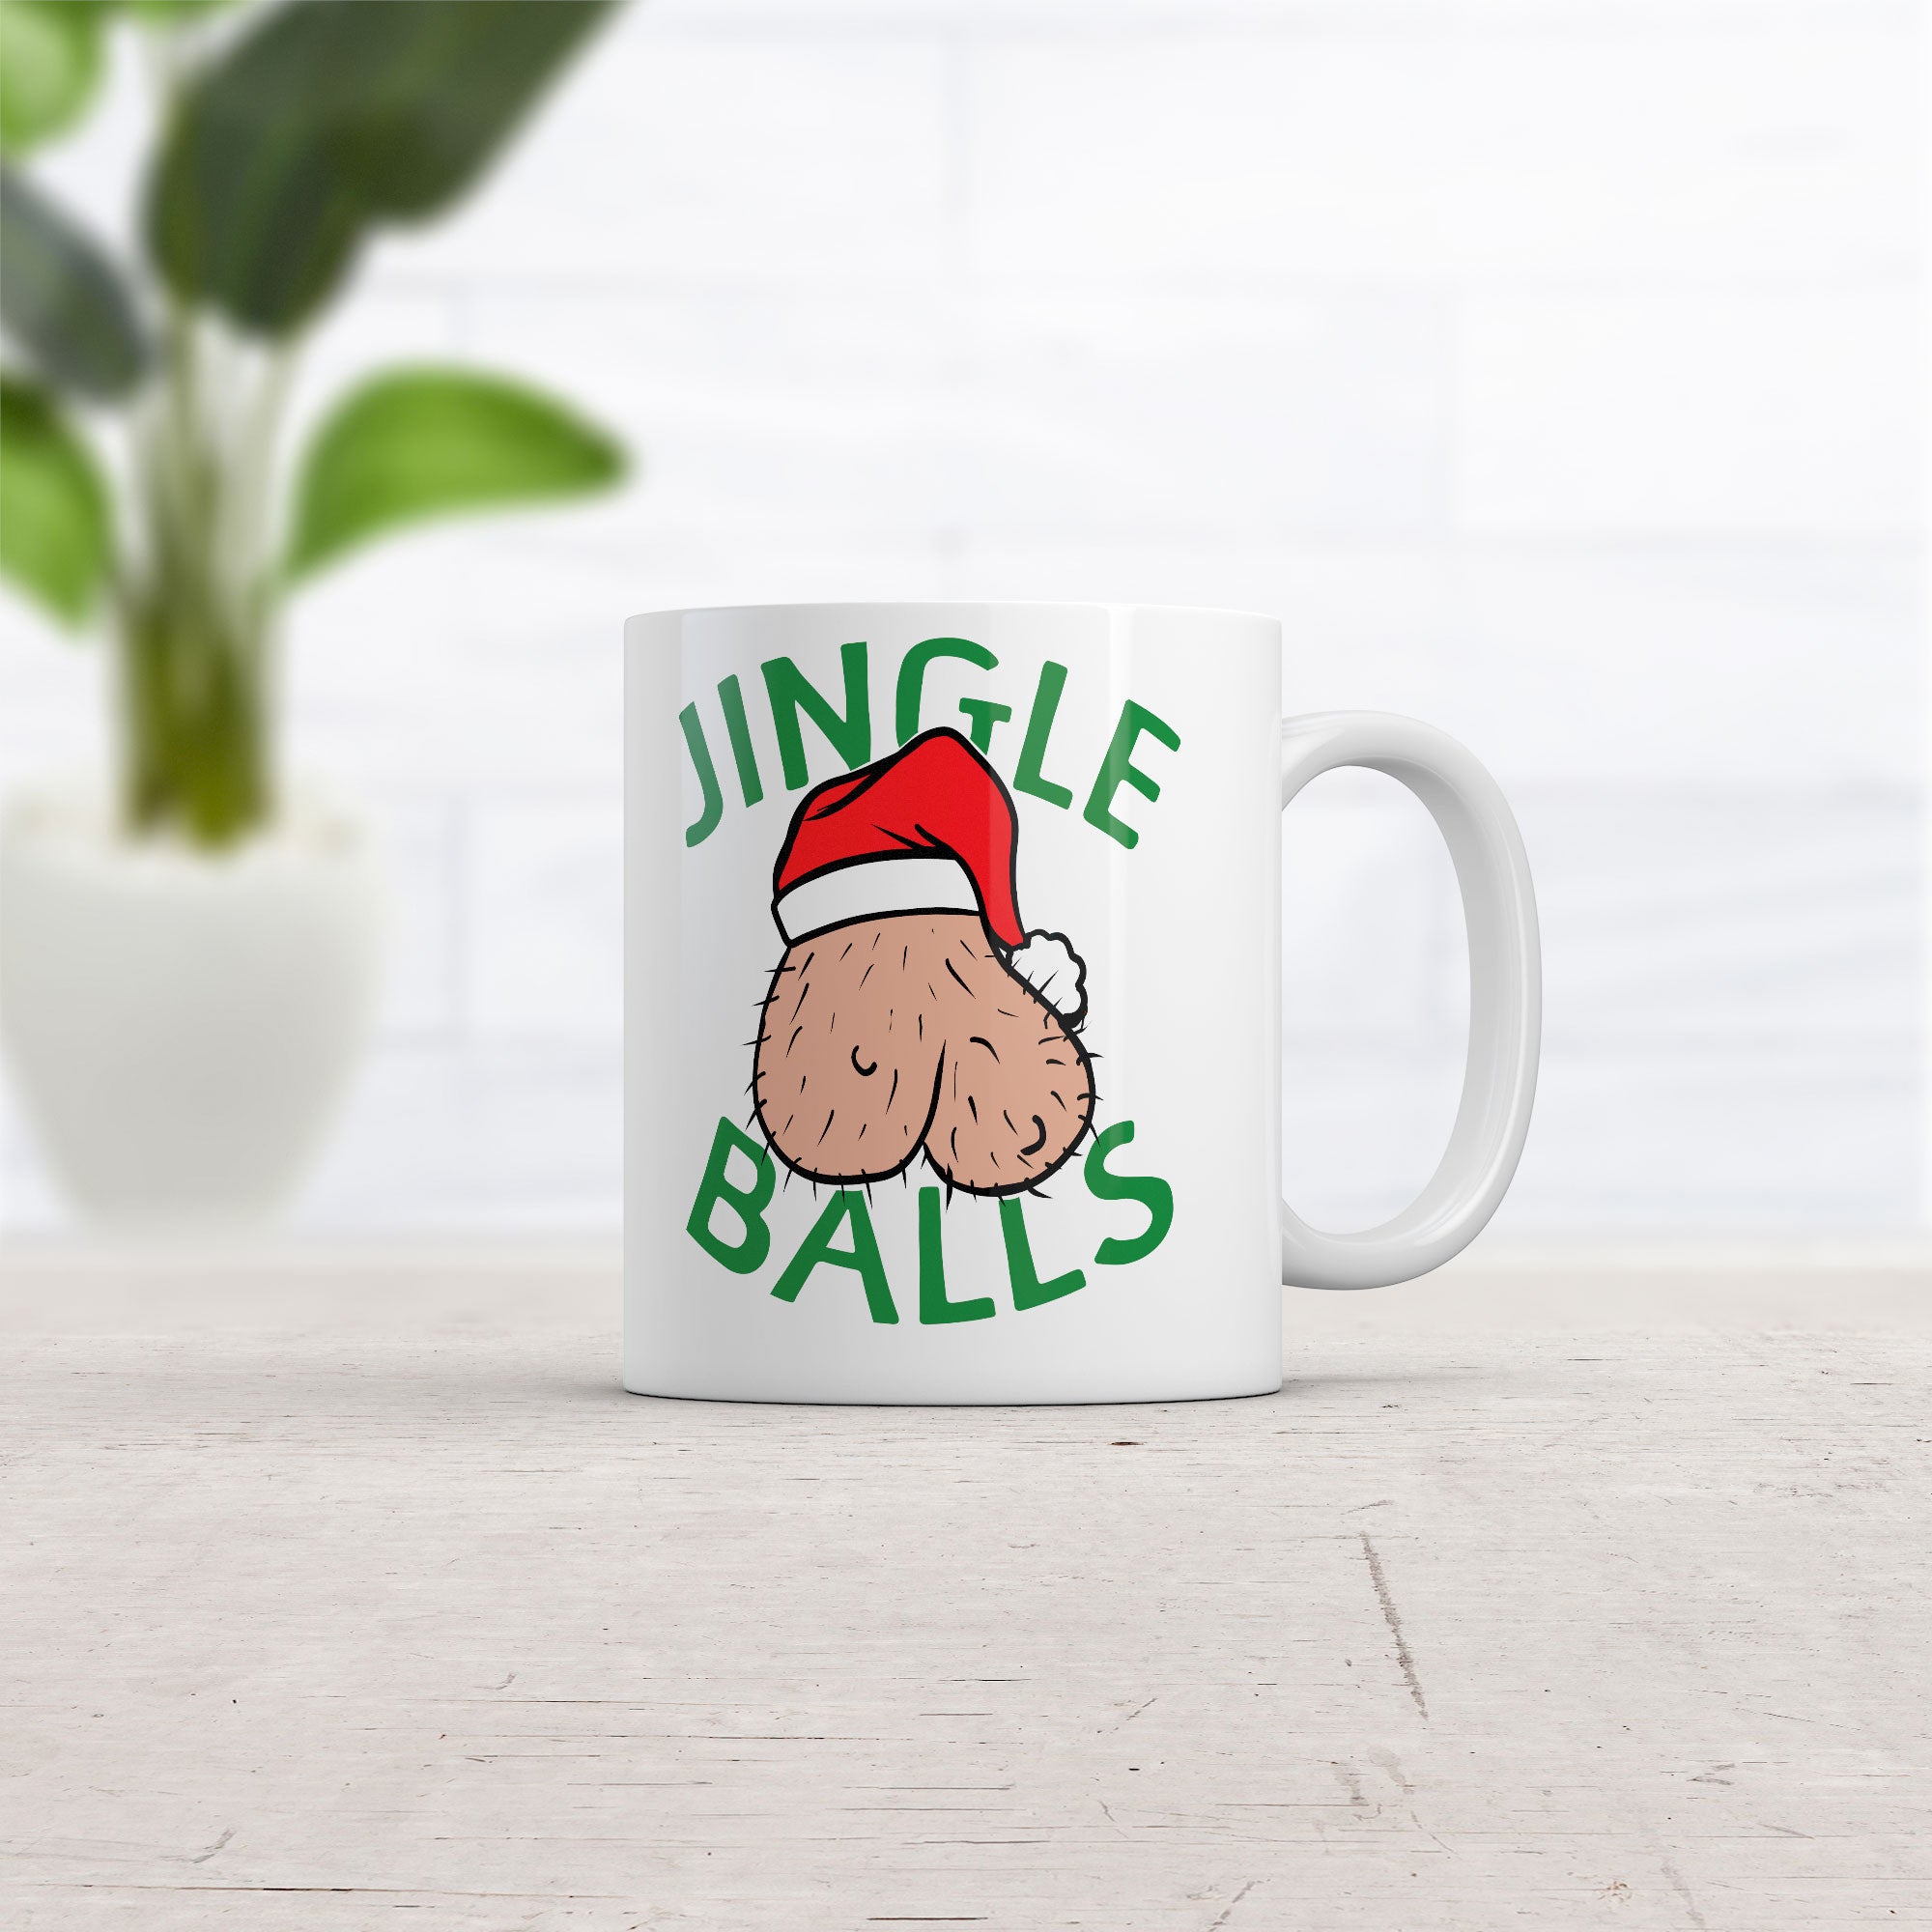 Funny White Jingle Balls Coffee Mug Nerdy Christmas sarcastic Tee